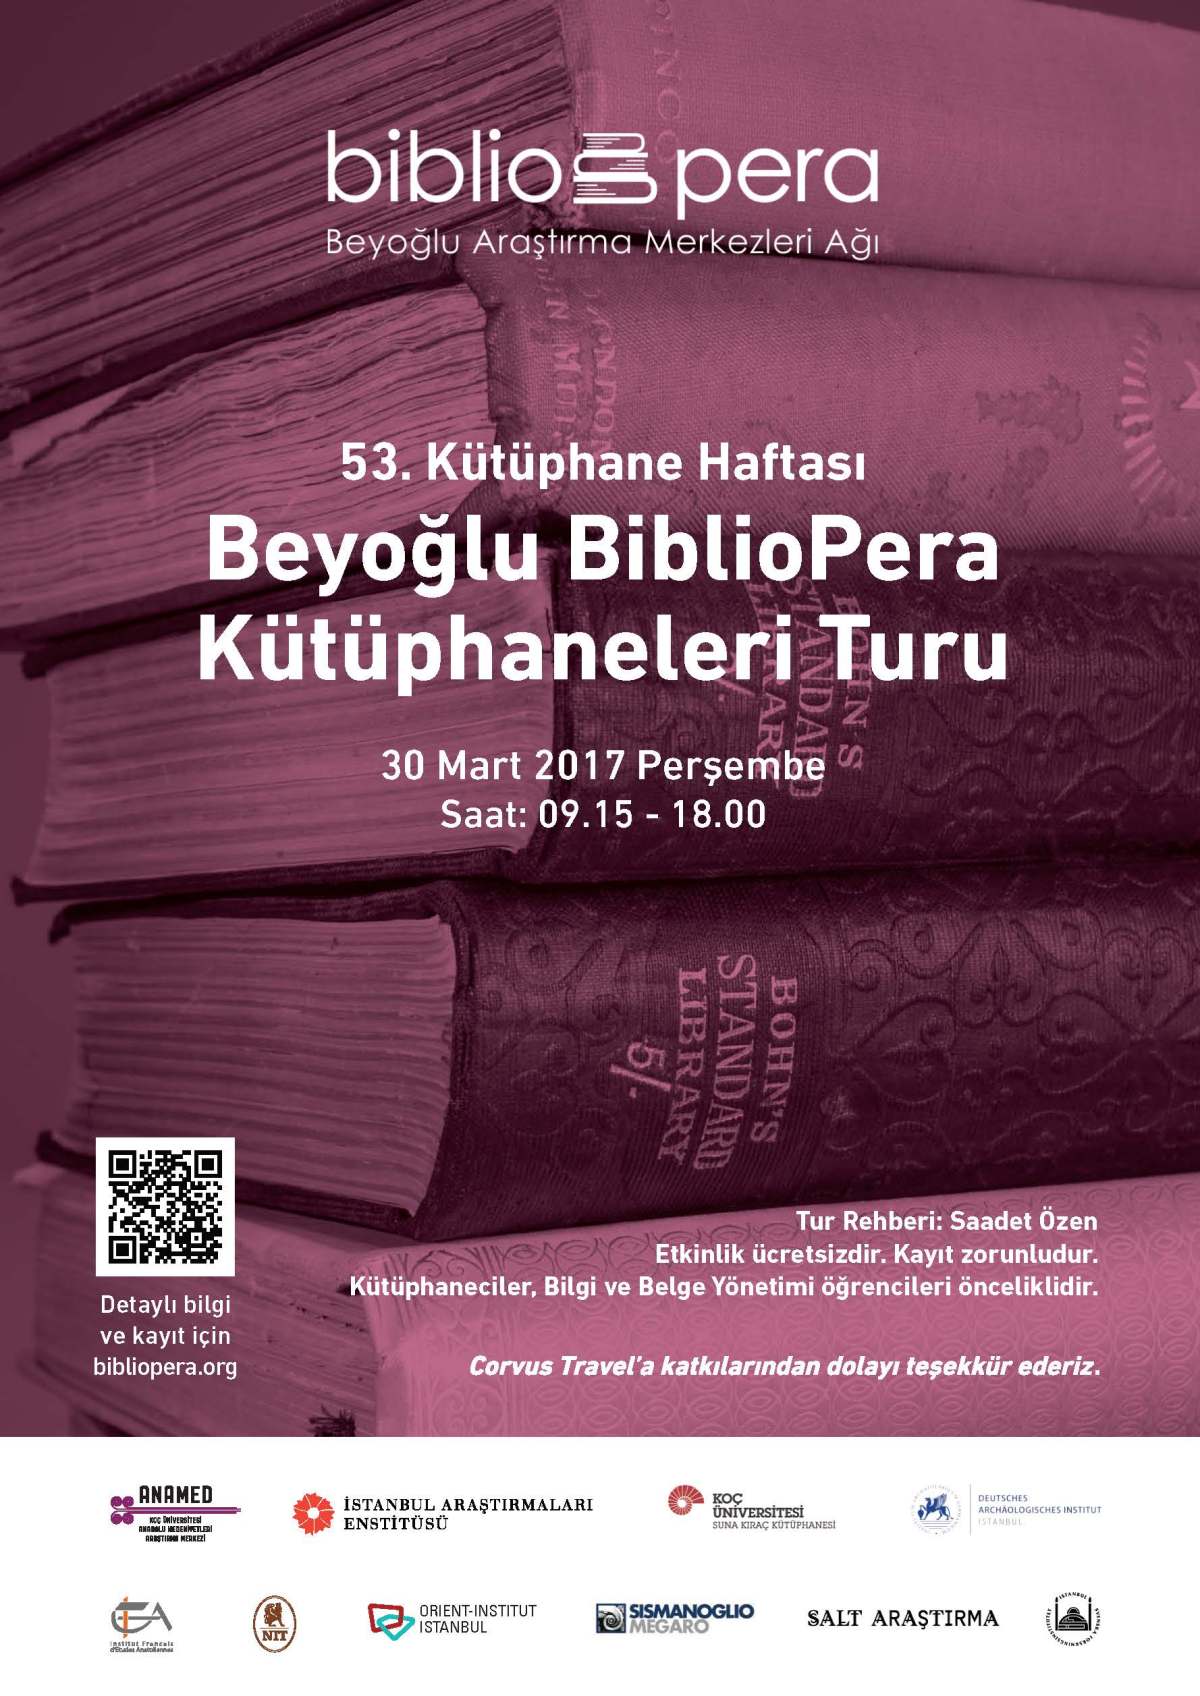 Beyoğlu BiblioPera Kütüphaneleri Turu